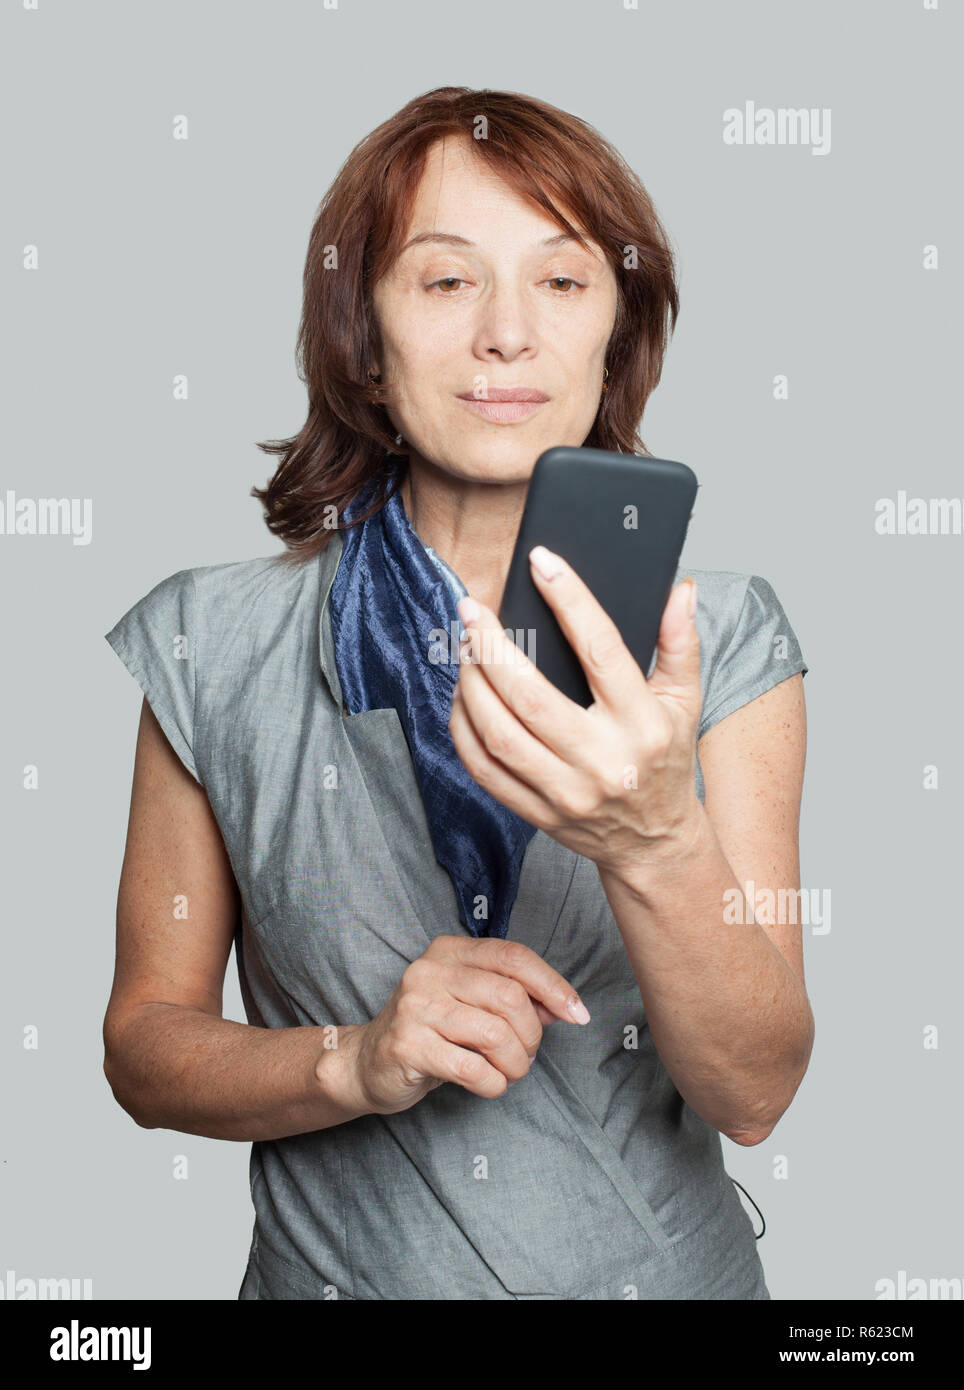 Reife Frau mit Smartphone und chatten Stockfotografie - Alamy